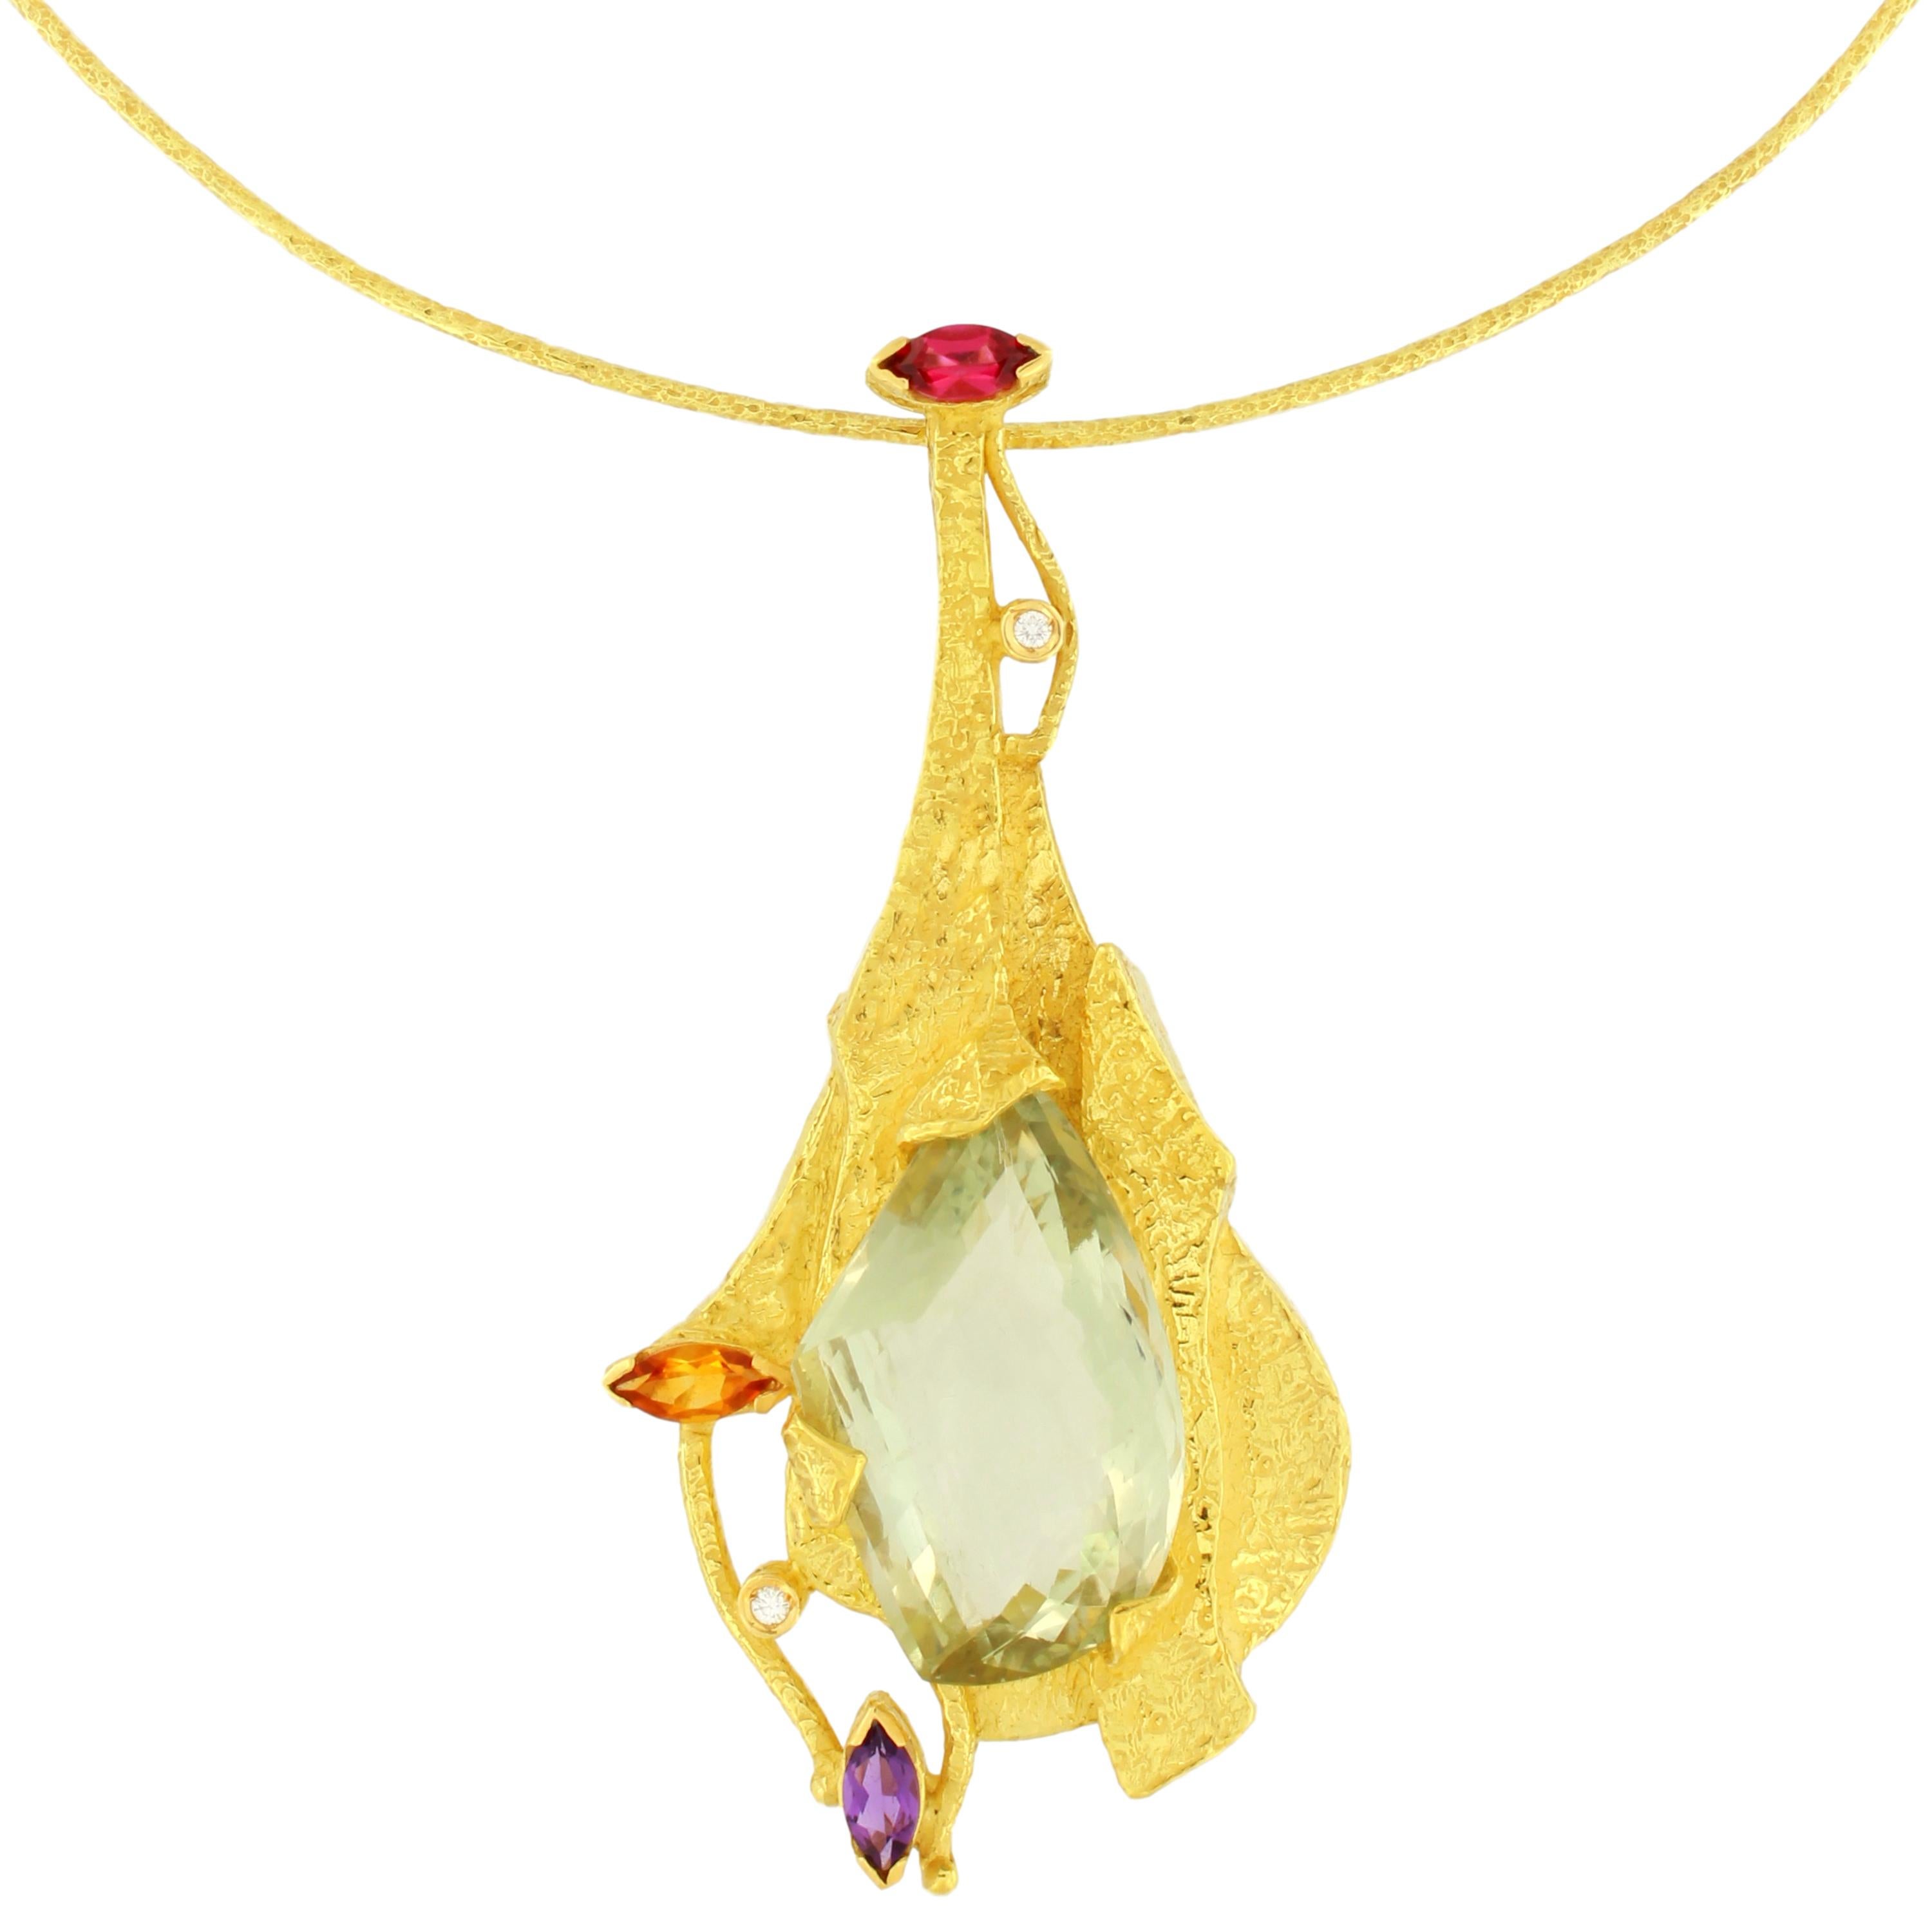 Exquisite Anhänger-Halskette aus satiniertem Gelbgold mit mehrfarbigen Edelsteinen aus der Kollektion 